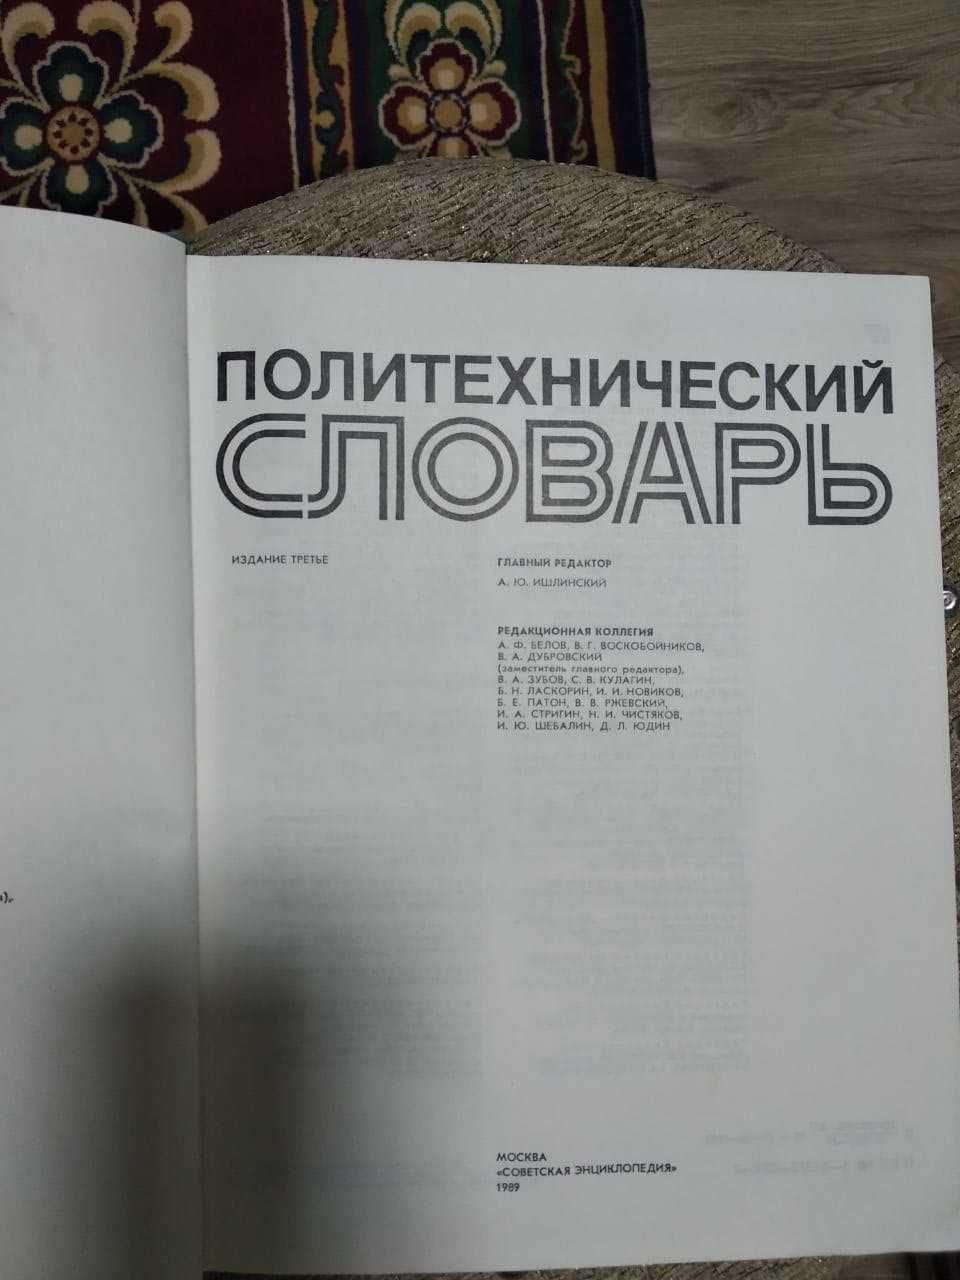 Политехнический словарь,Москва,1989 г.